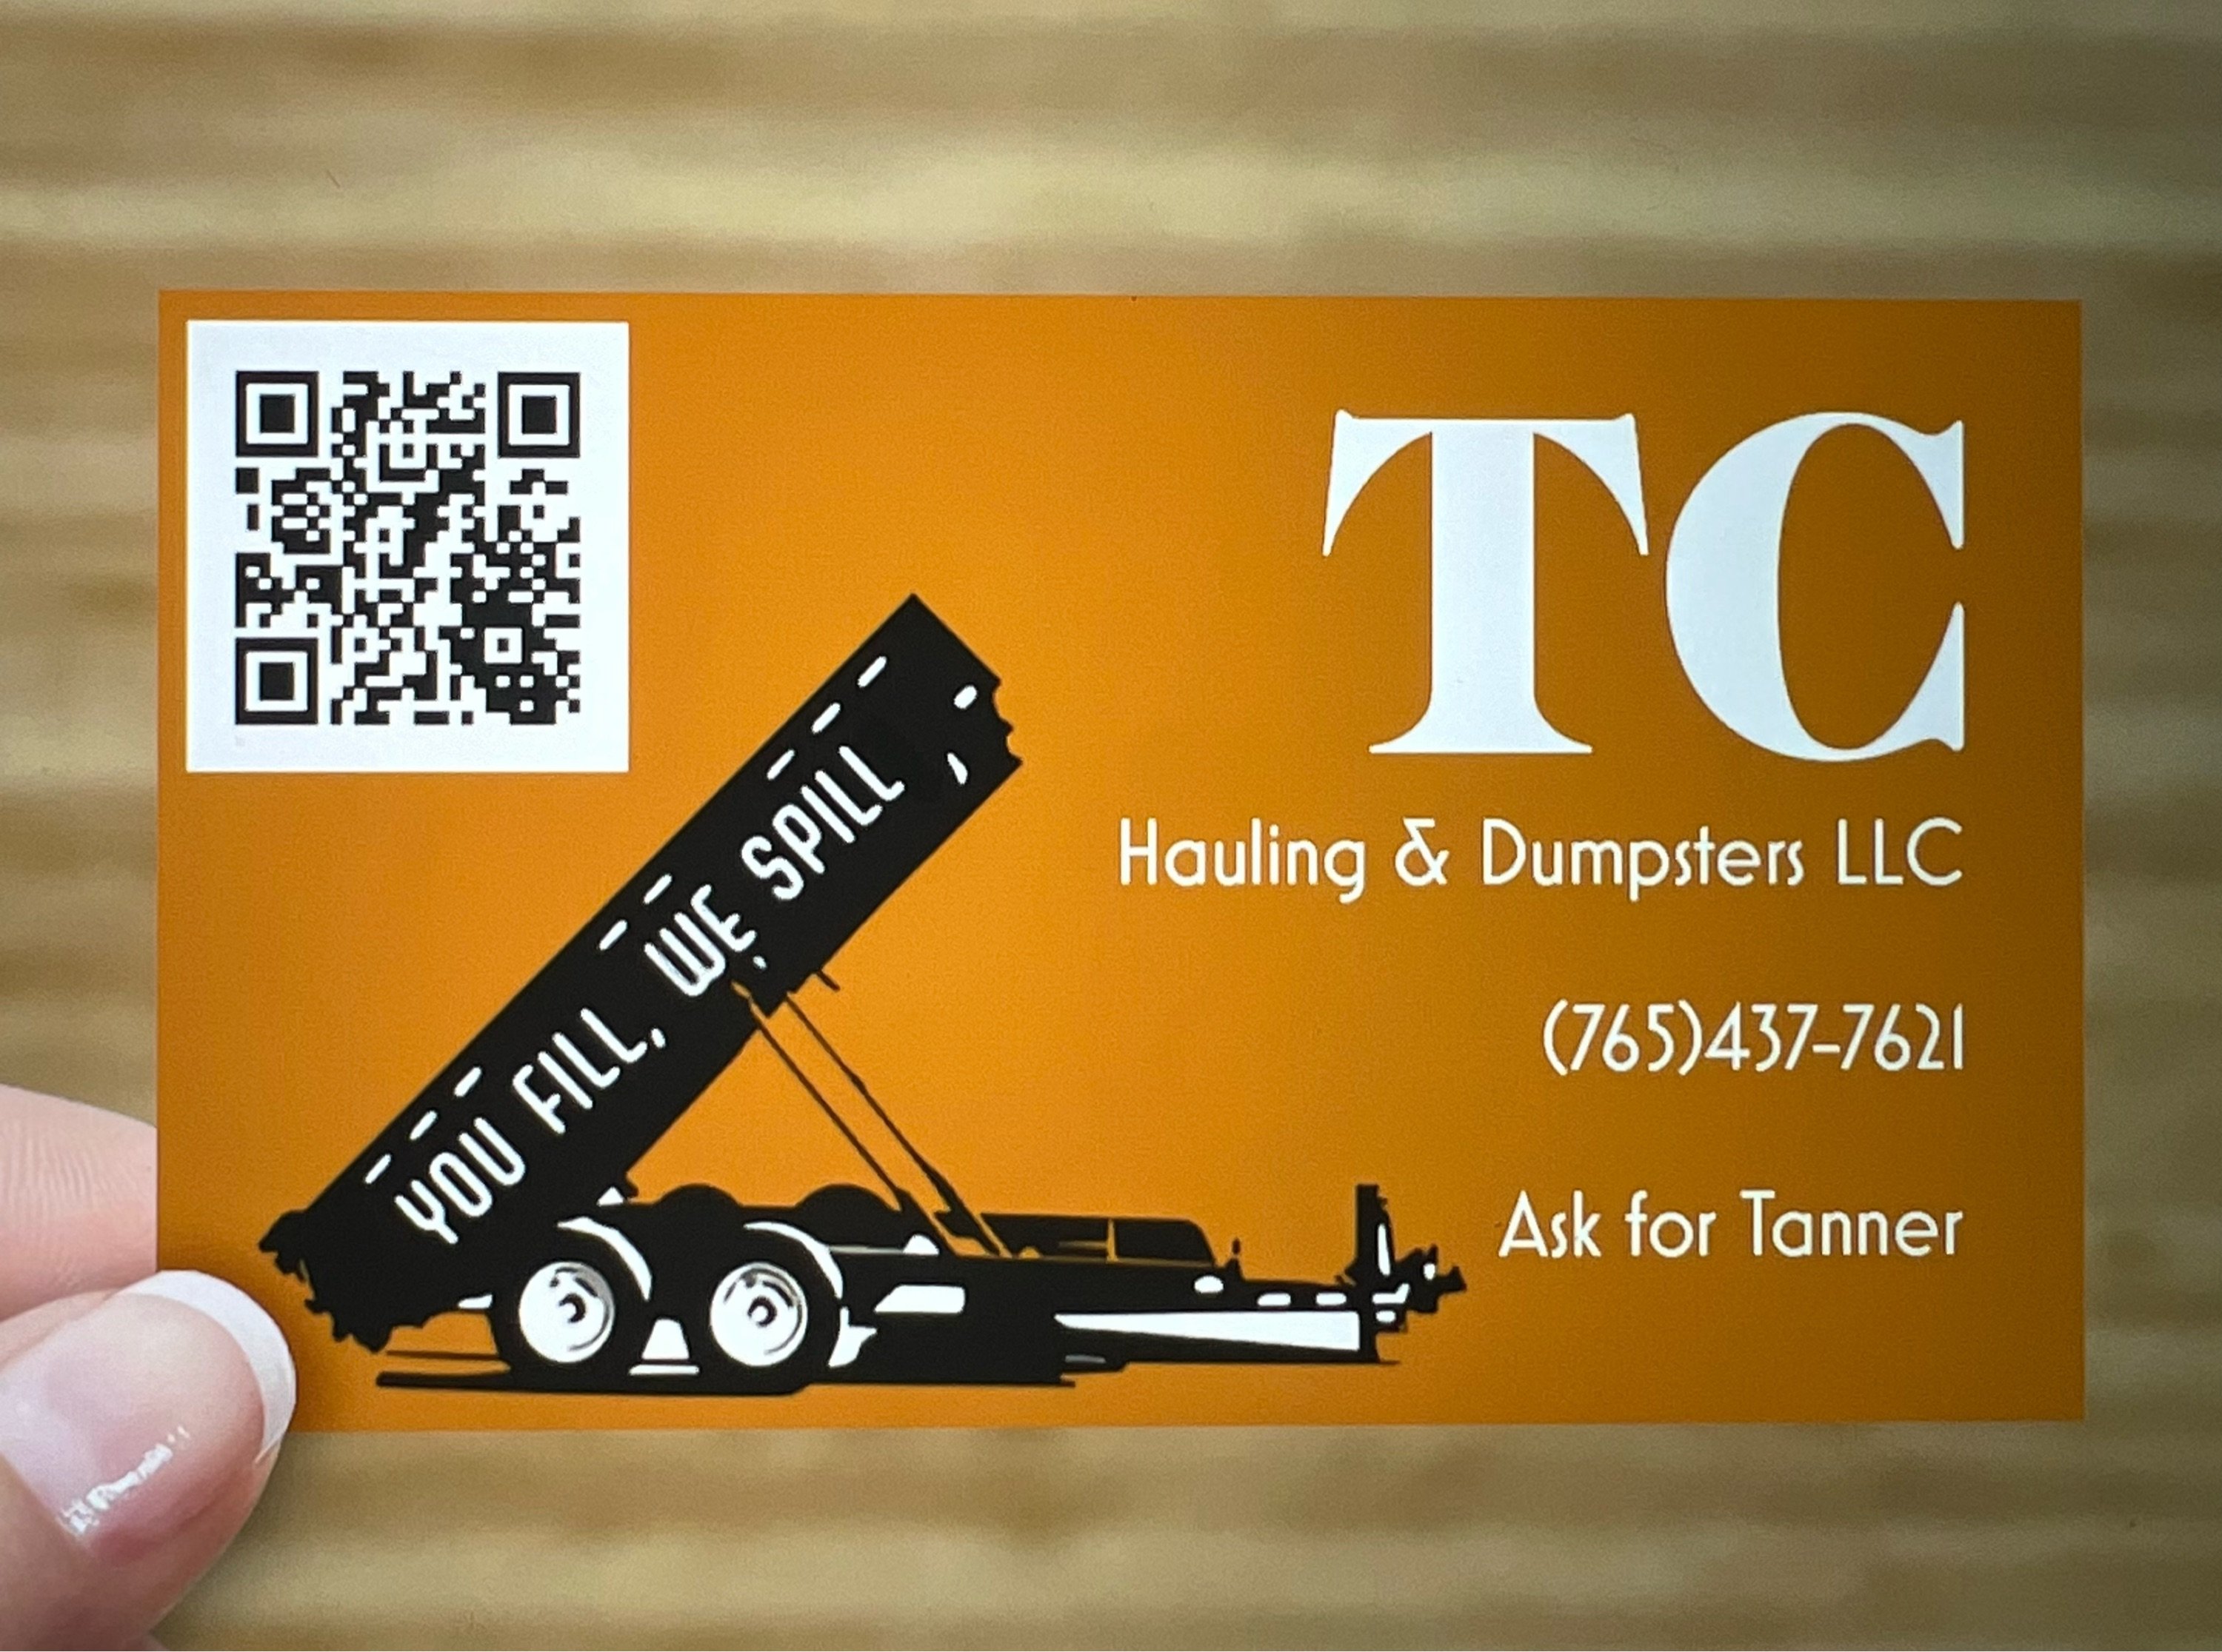 TC Hauling & Dumpsters LLC Logo